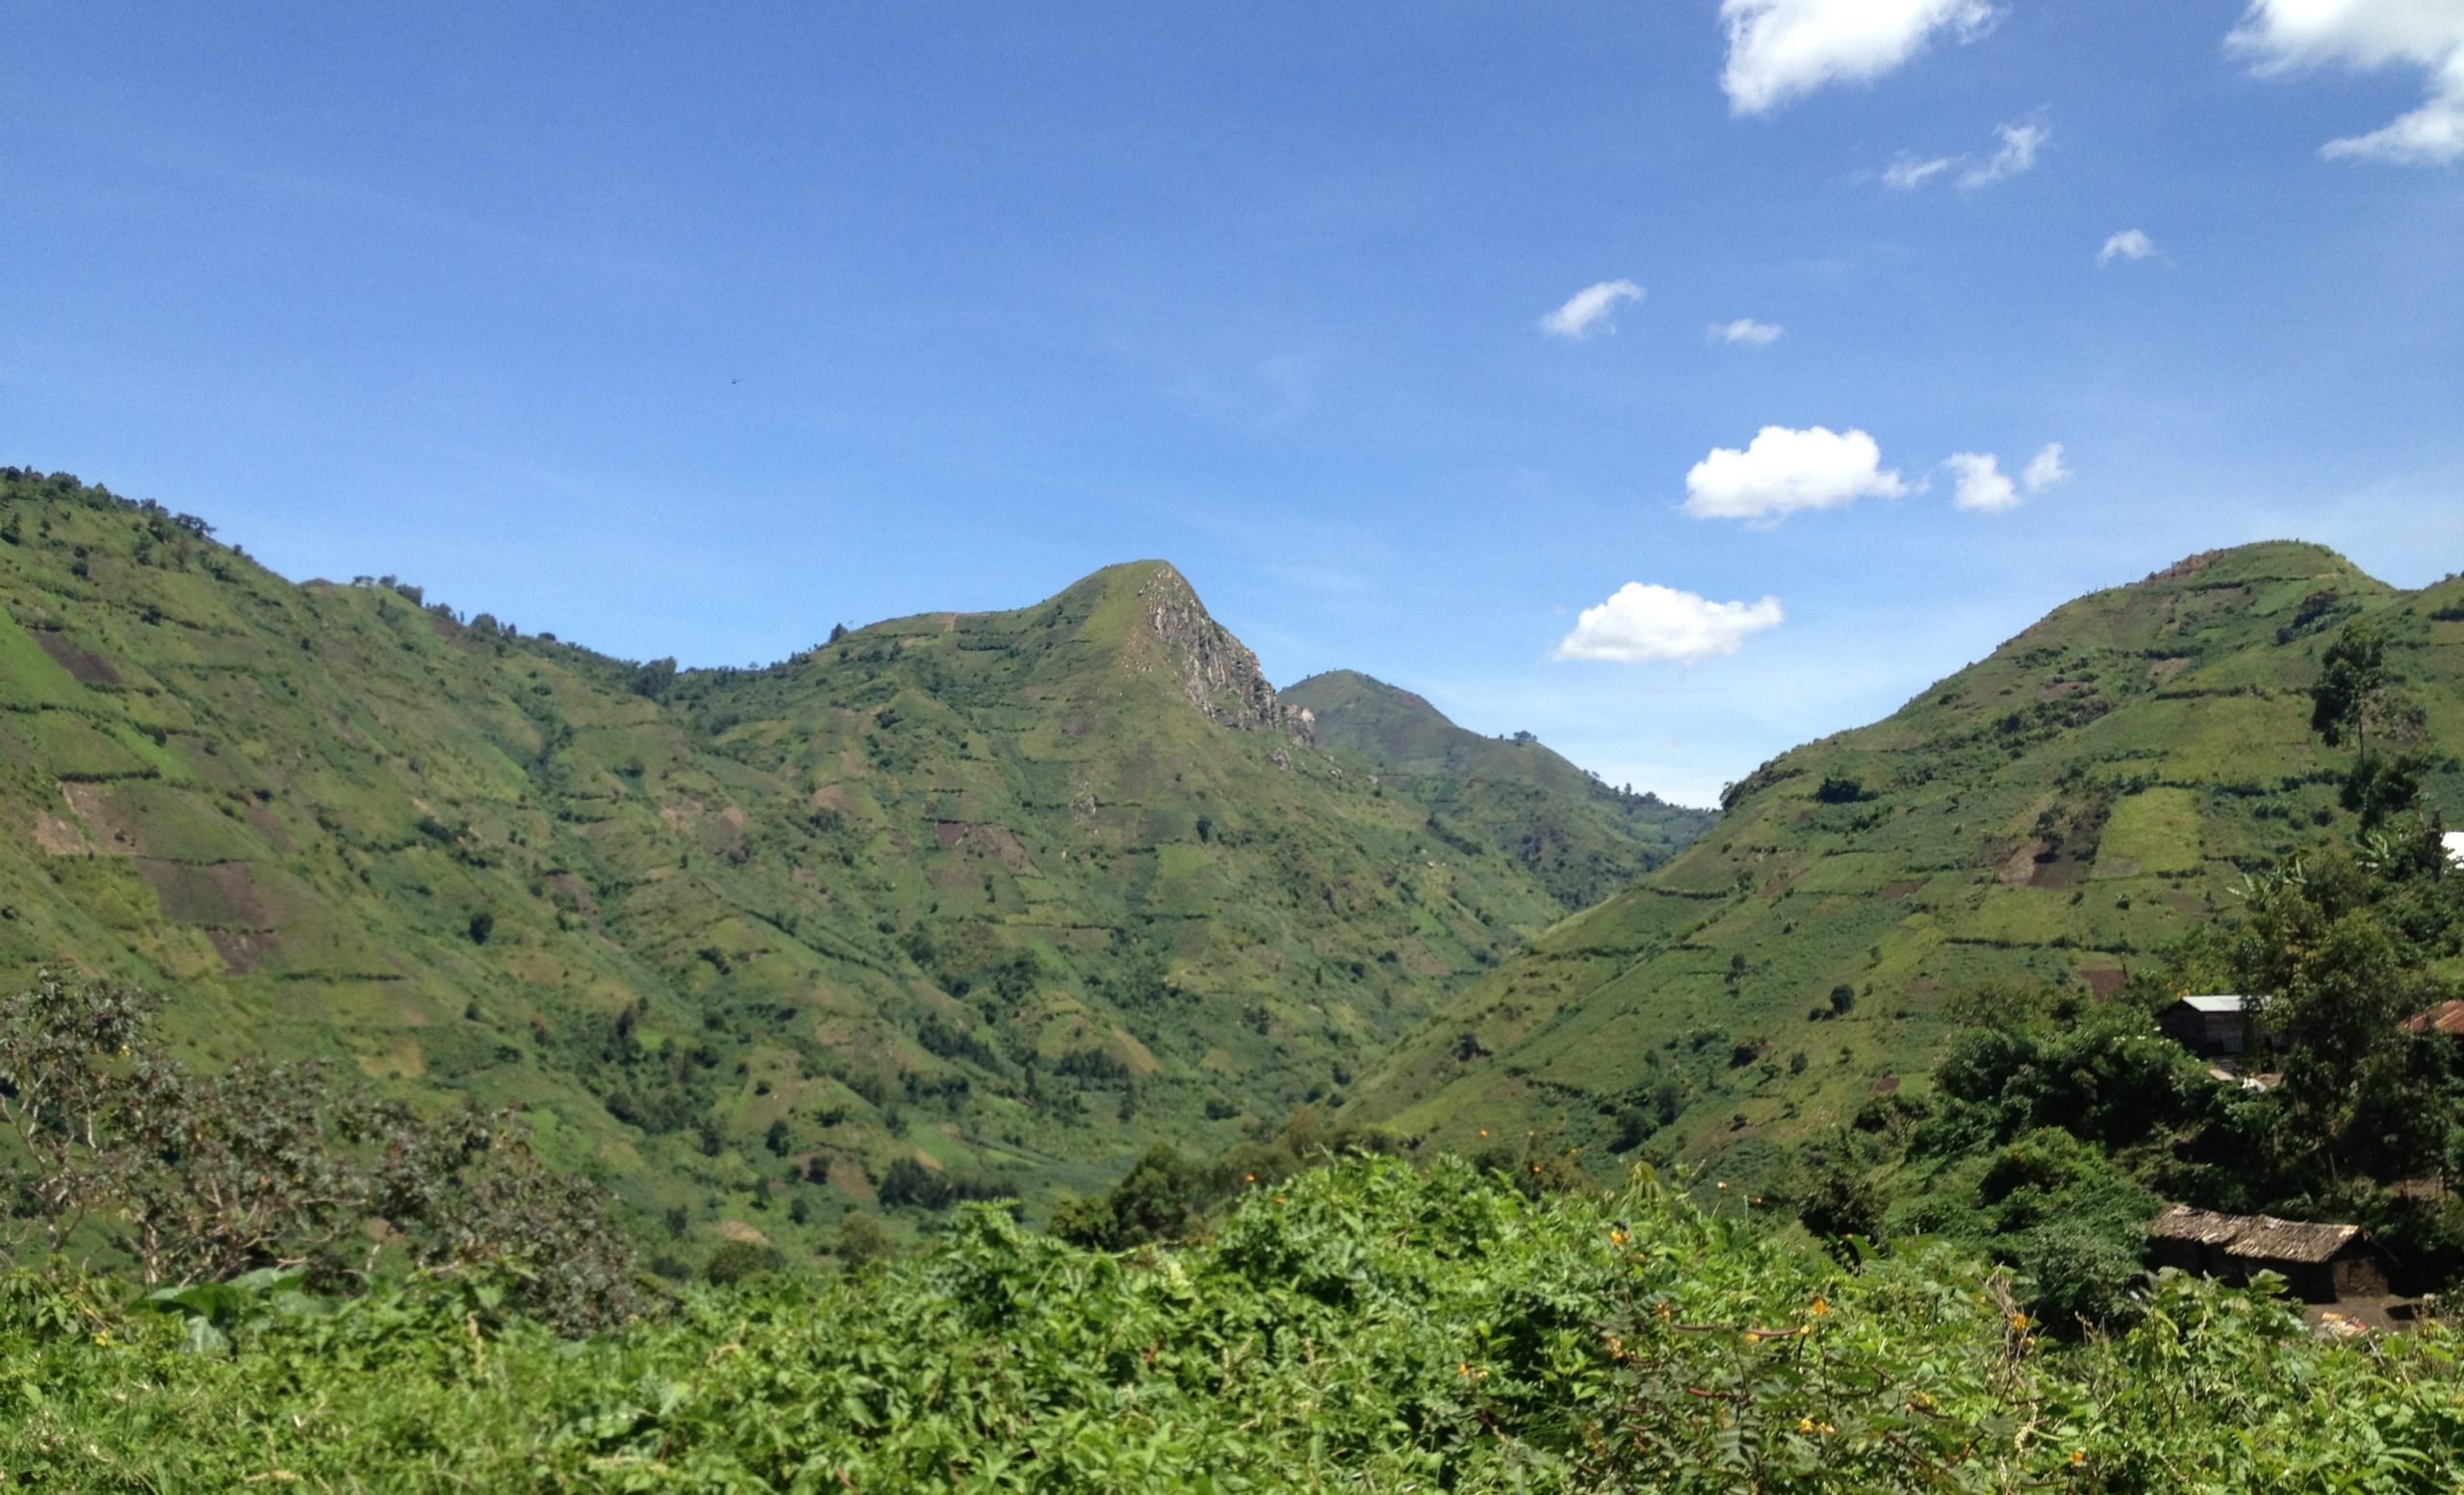 Jardines de café en las colinas del este de la RDC-670182-edited.jpg